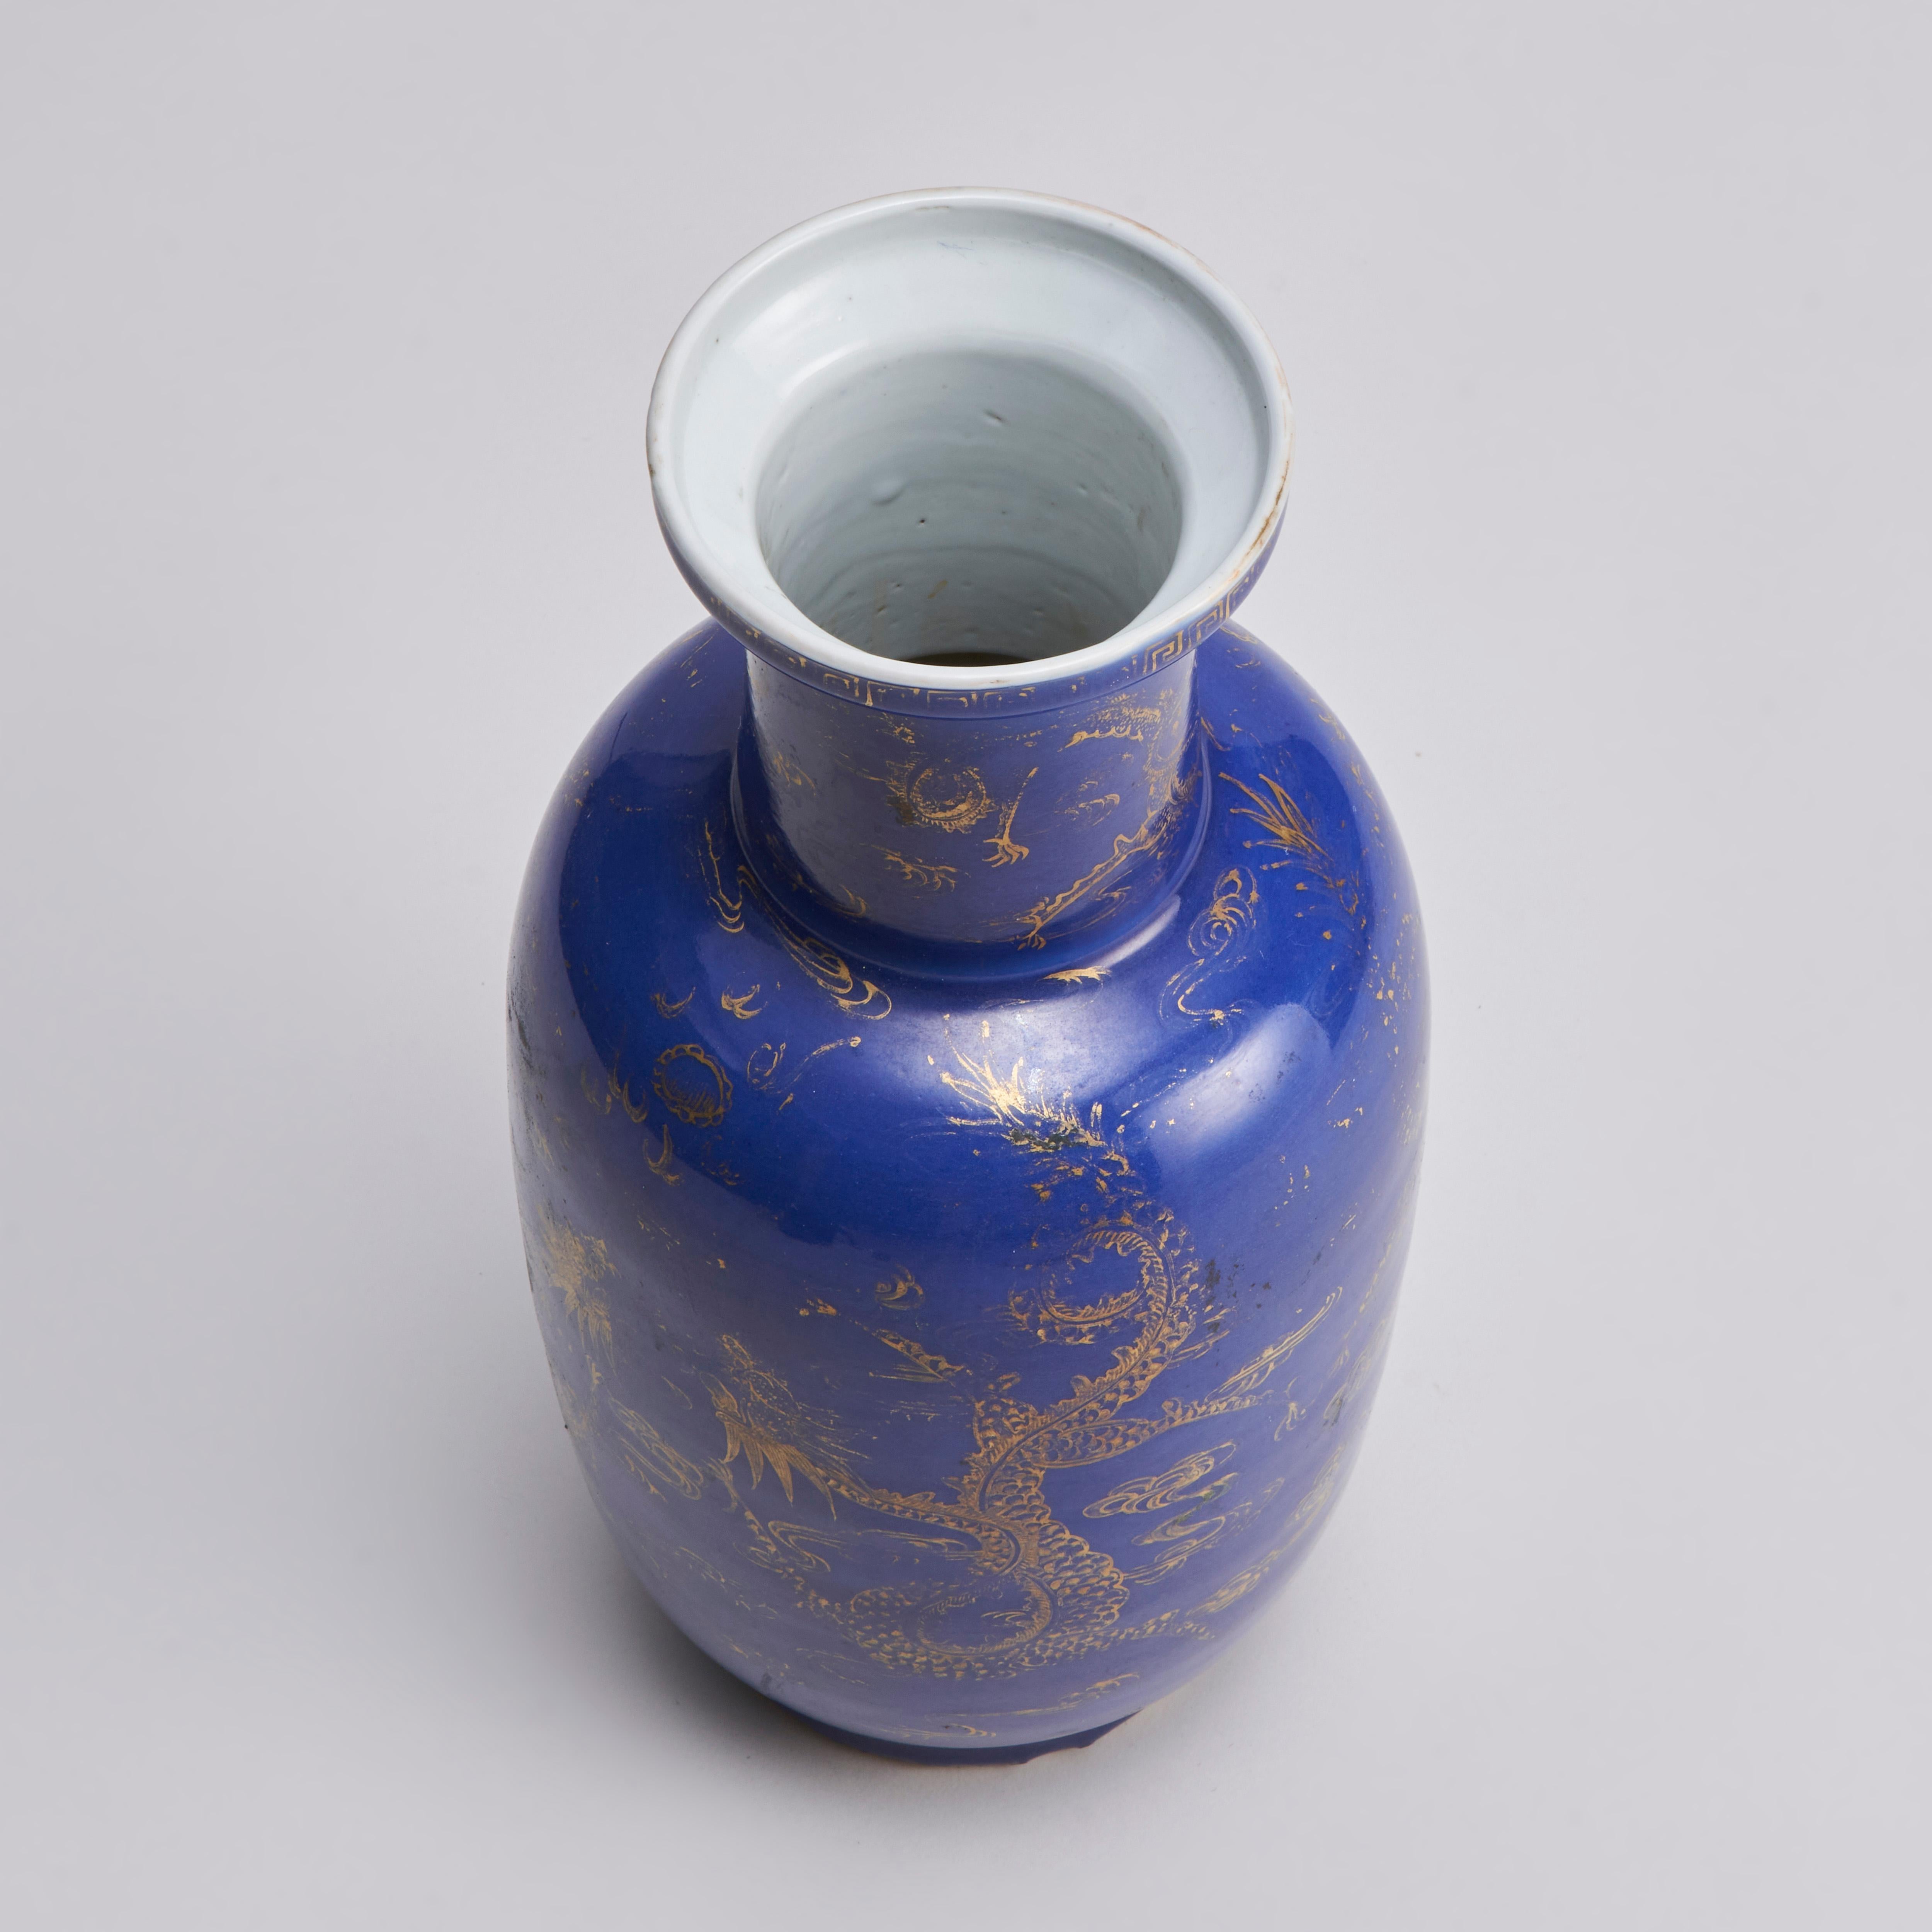 Issu de notre collection de porcelaines chinoises anciennes, ce Bangchiuping (vase Rouleau) chinois du XIXe siècle, de couleur bleu poudré, présente un élégant décor doré de dragons se déchirant dans un ciel rempli de nuages. Le col du vase est orné